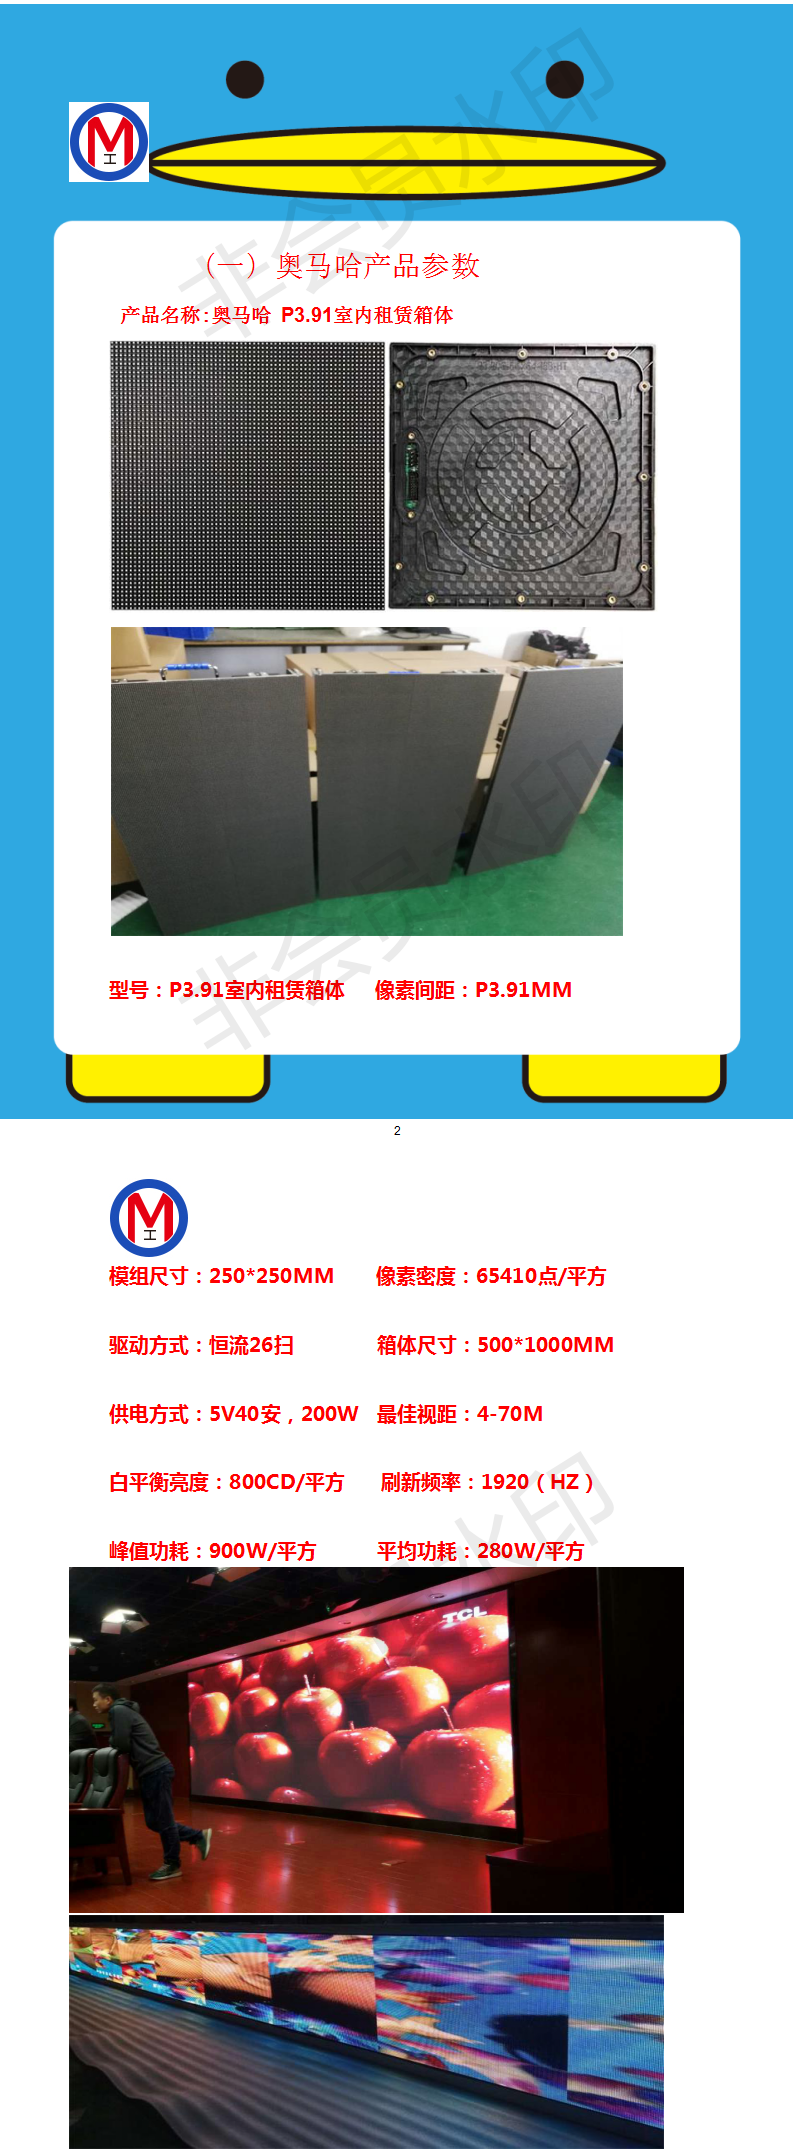 重庆万州区人民党校LED室内高清显示屏专用P3.91租赁箱体(奥马哈)